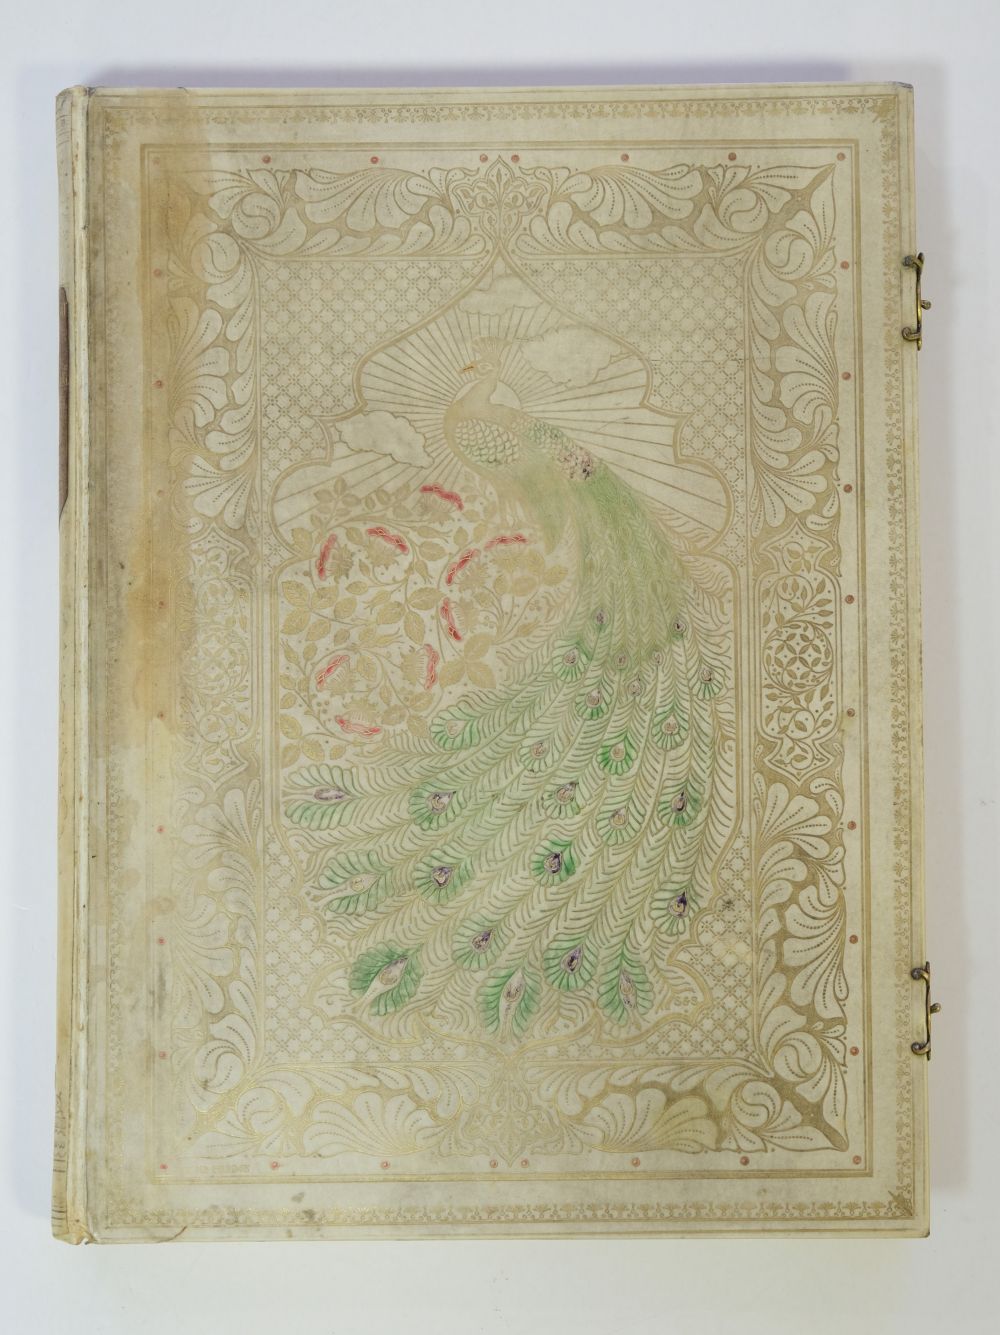 Sangorski & Sutcliffe Binding. Rubaiyat of Omar Khayyam, 1911 - Image 4 of 15